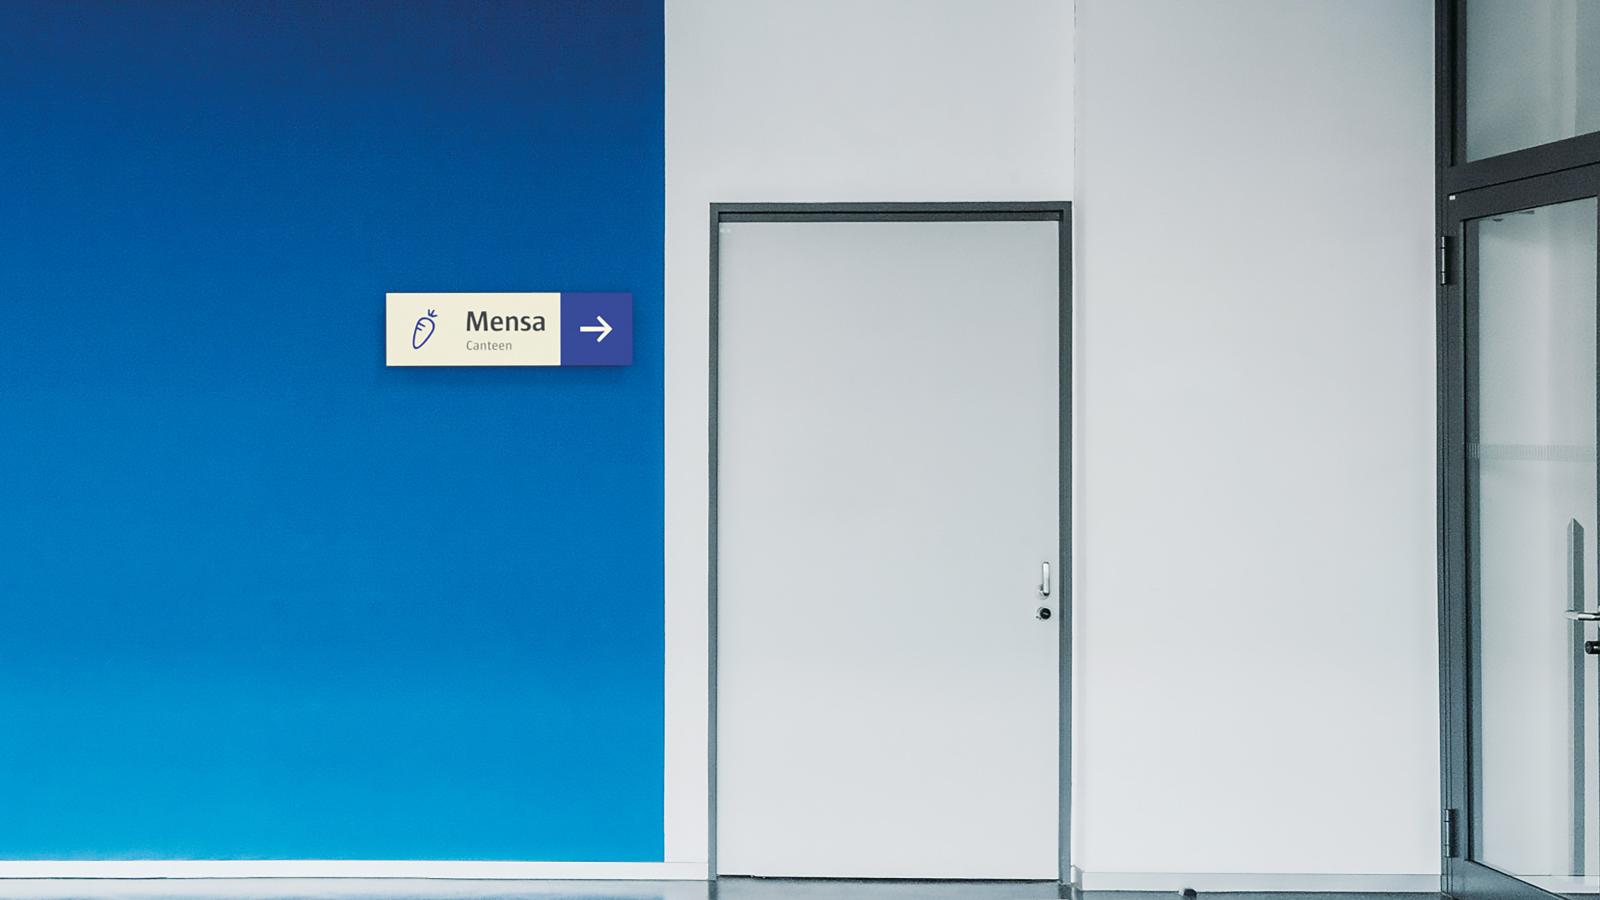 Blaue Wand vor dem Eingang zur Mensa mit Richtungspfeil und Auszeichnung "Mensa/Canteen"; daneben das Symbol einer Karotte